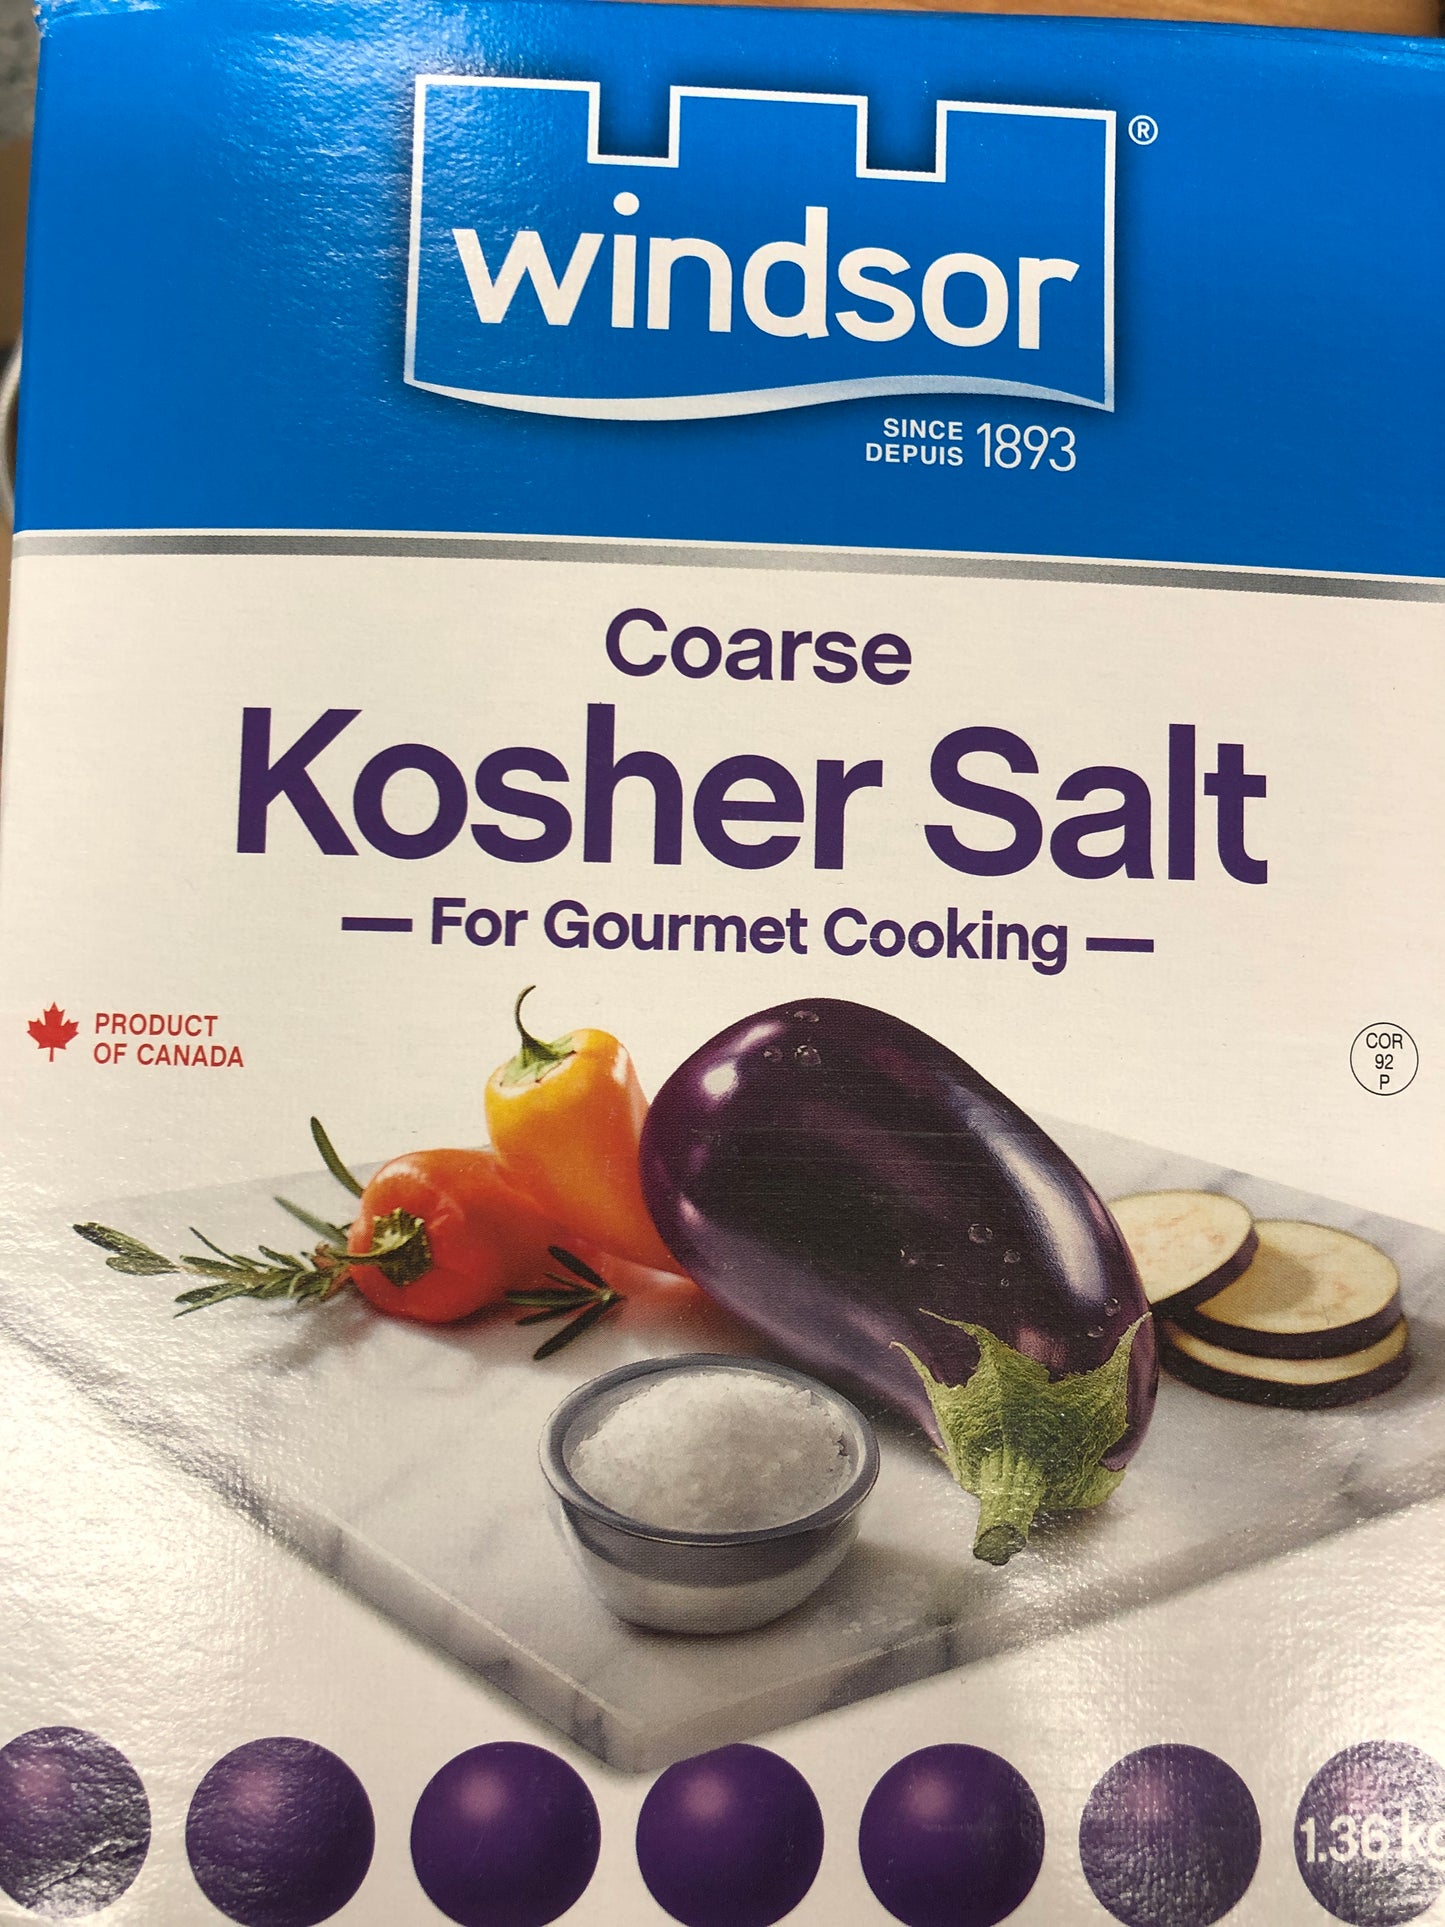 Kosher salt, coarse